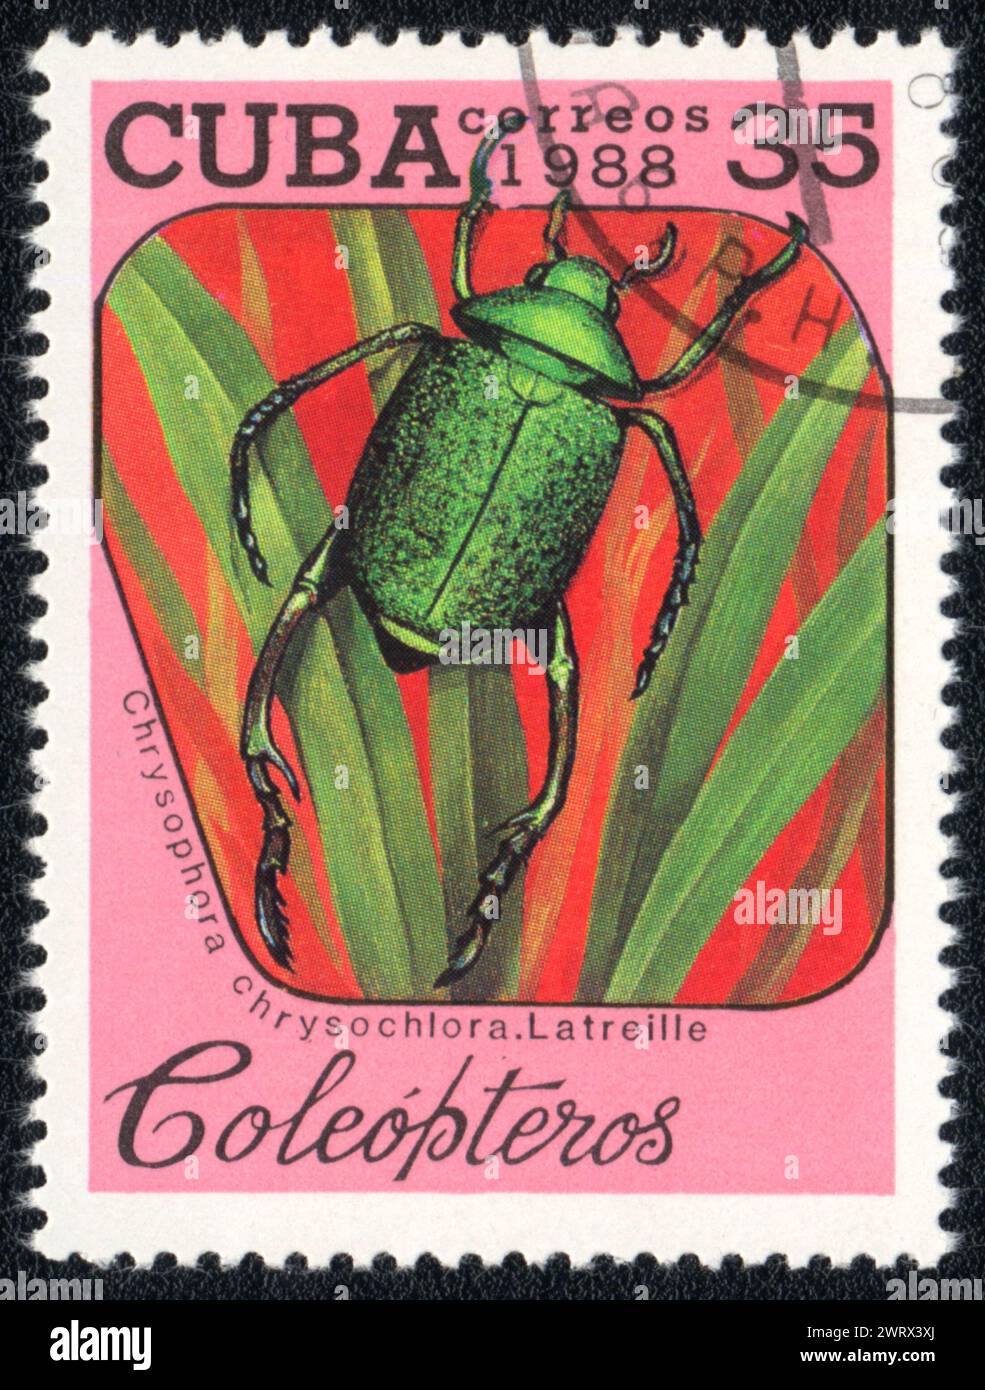 Die auf KUBA gedruckte Briefmarke zeigt das Bild eines Schabenkäfers (Chrysophora chrysochlora). Latreille) Käfer, aus Serie - Entomofa Stockfoto